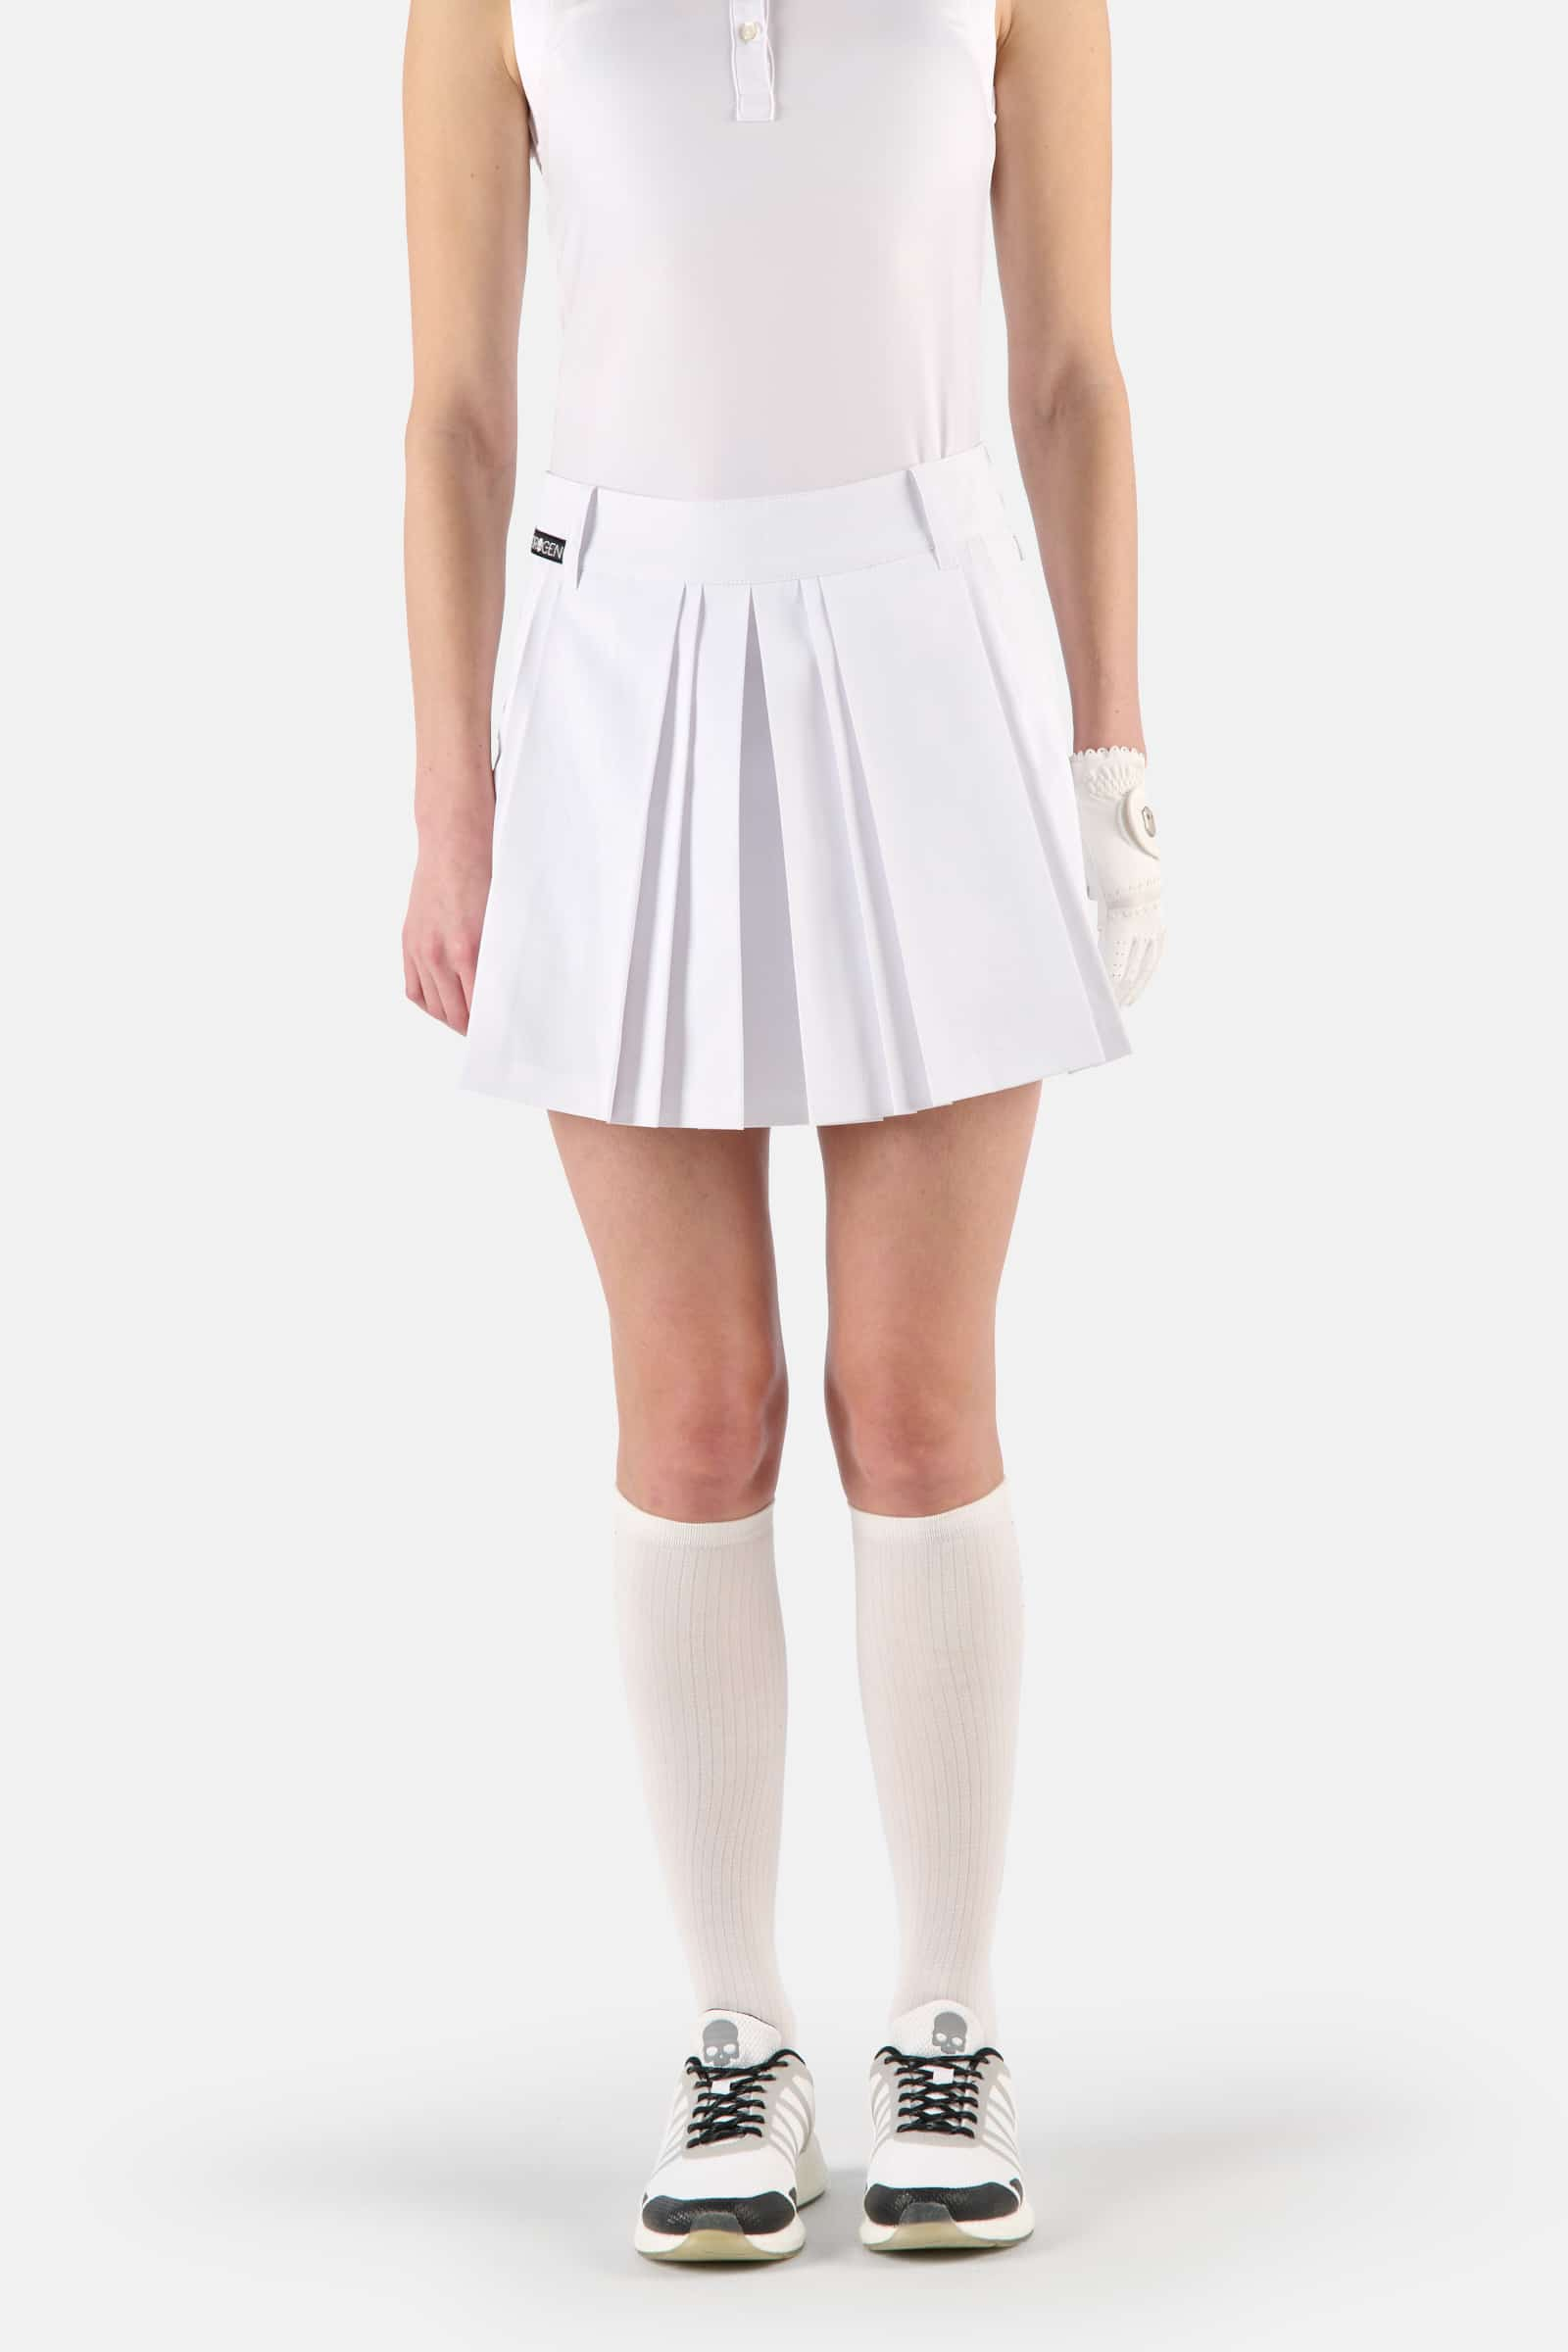 TECH SKIRT - WHITE - Hydrogen - Luxury Sportwear